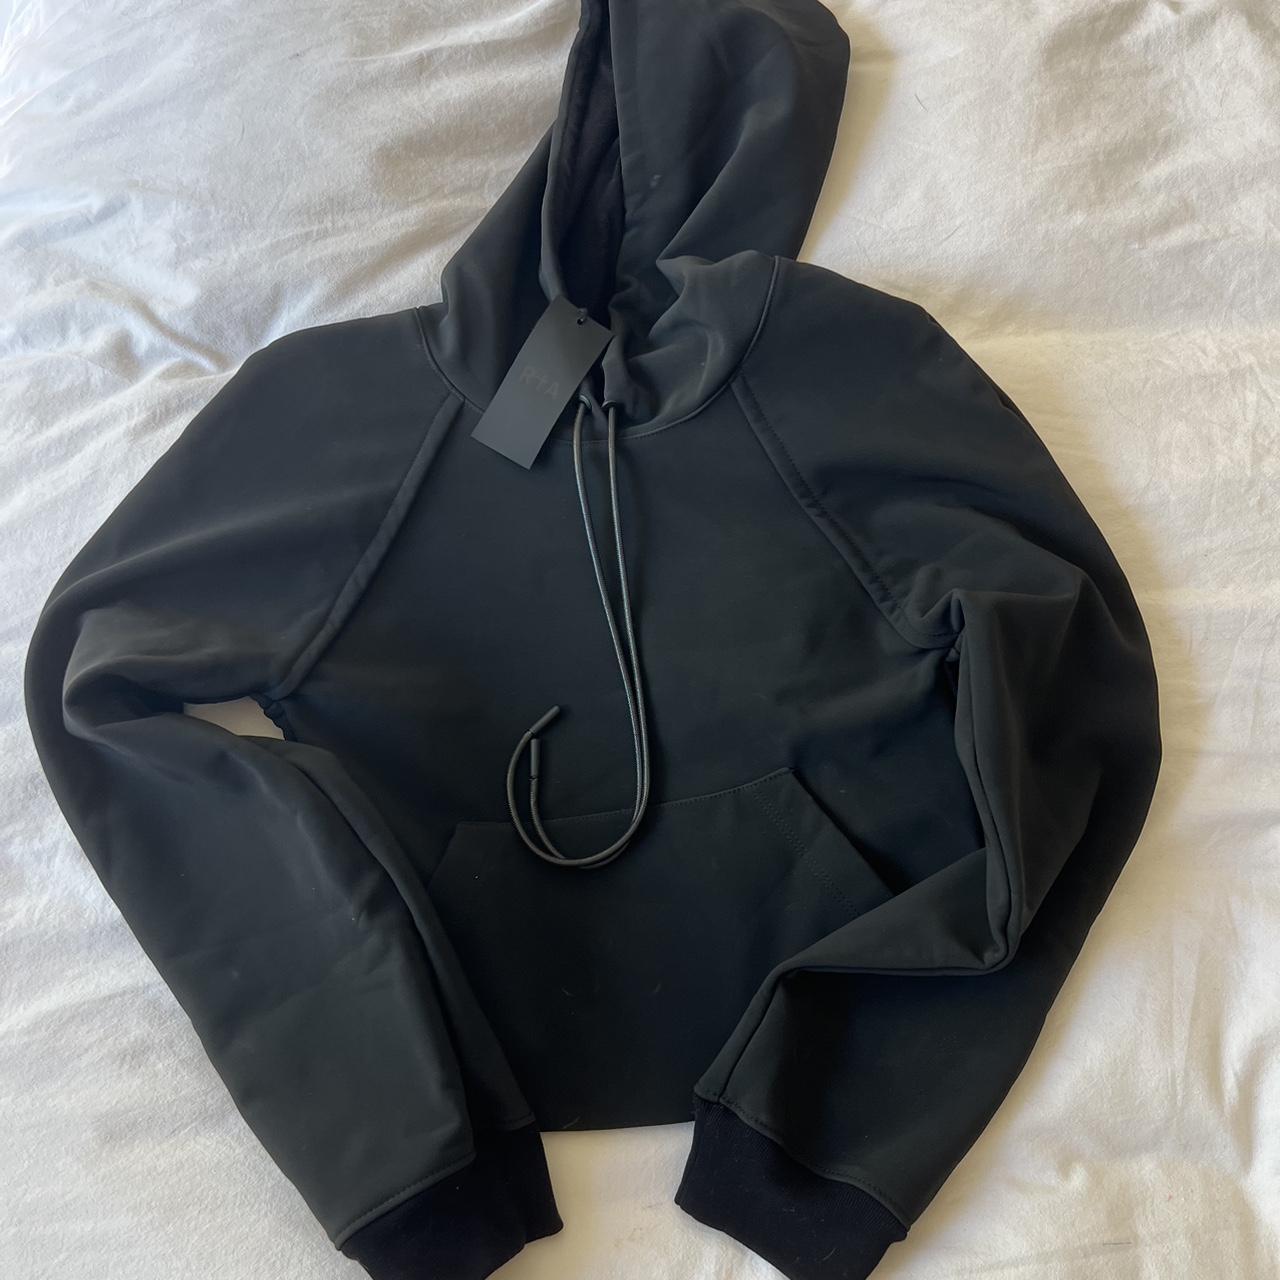 RTA hoodie Never worn - Depop